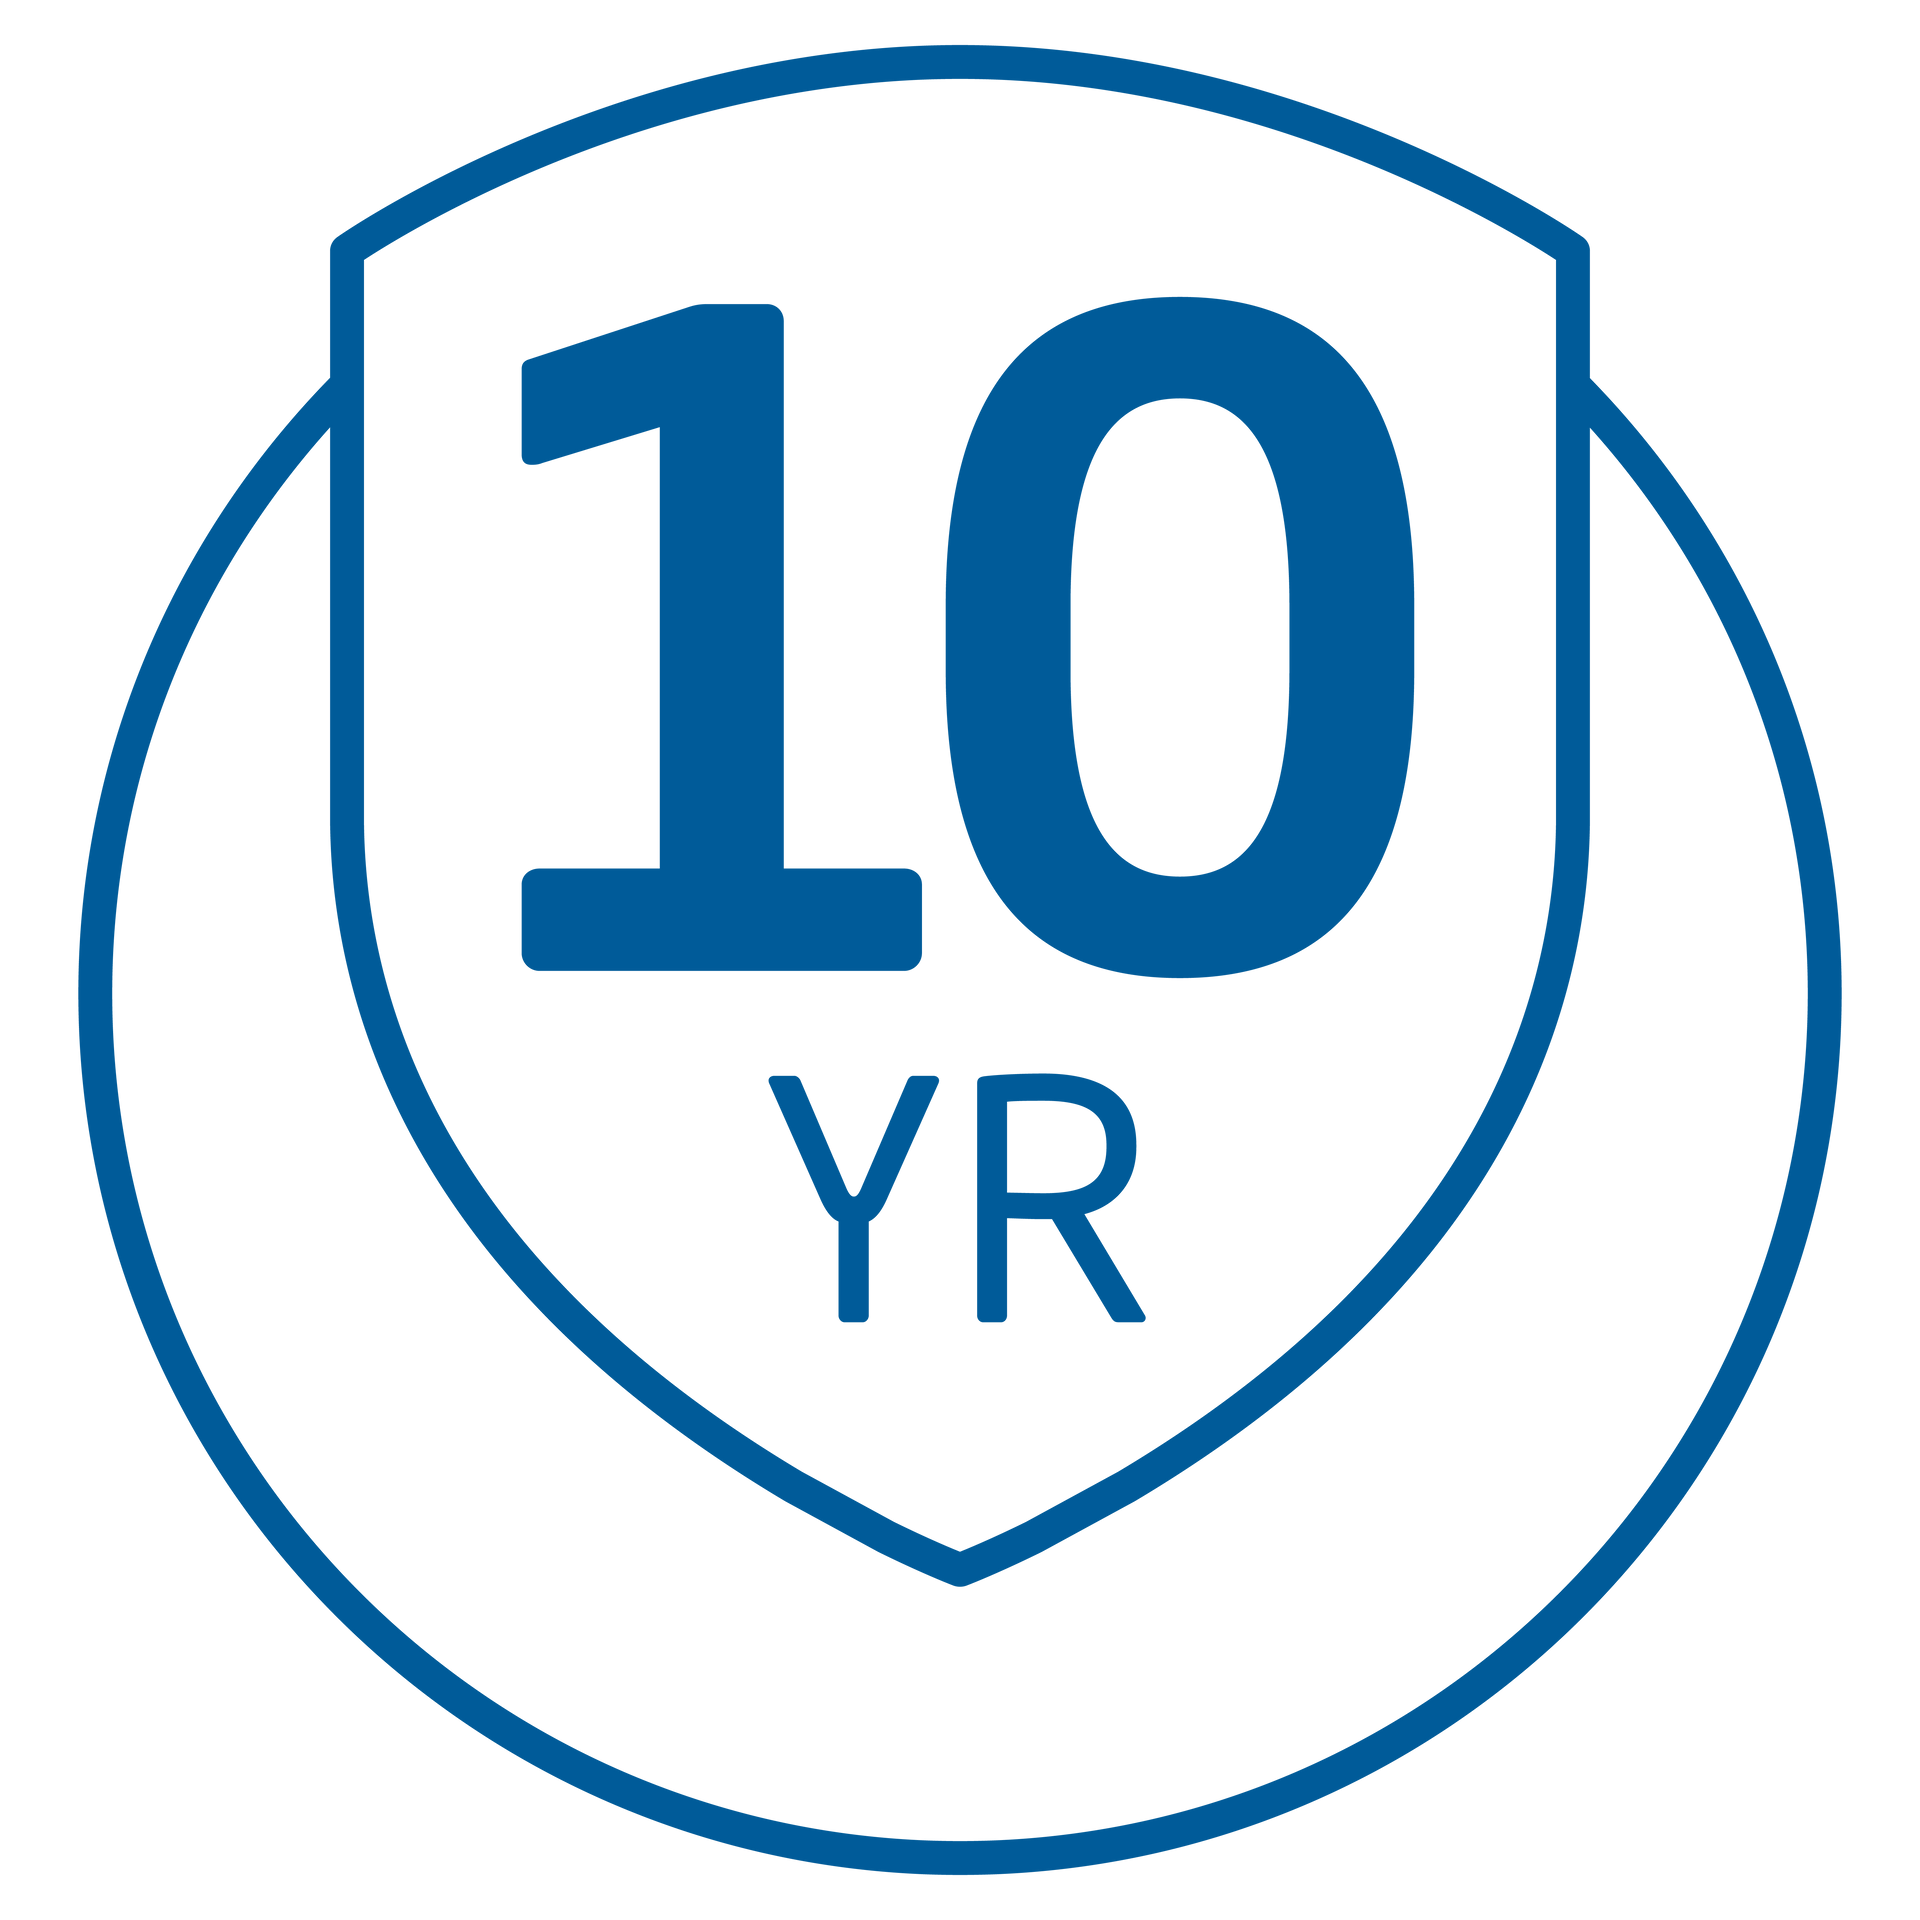 Baxi 10 year warranty logo